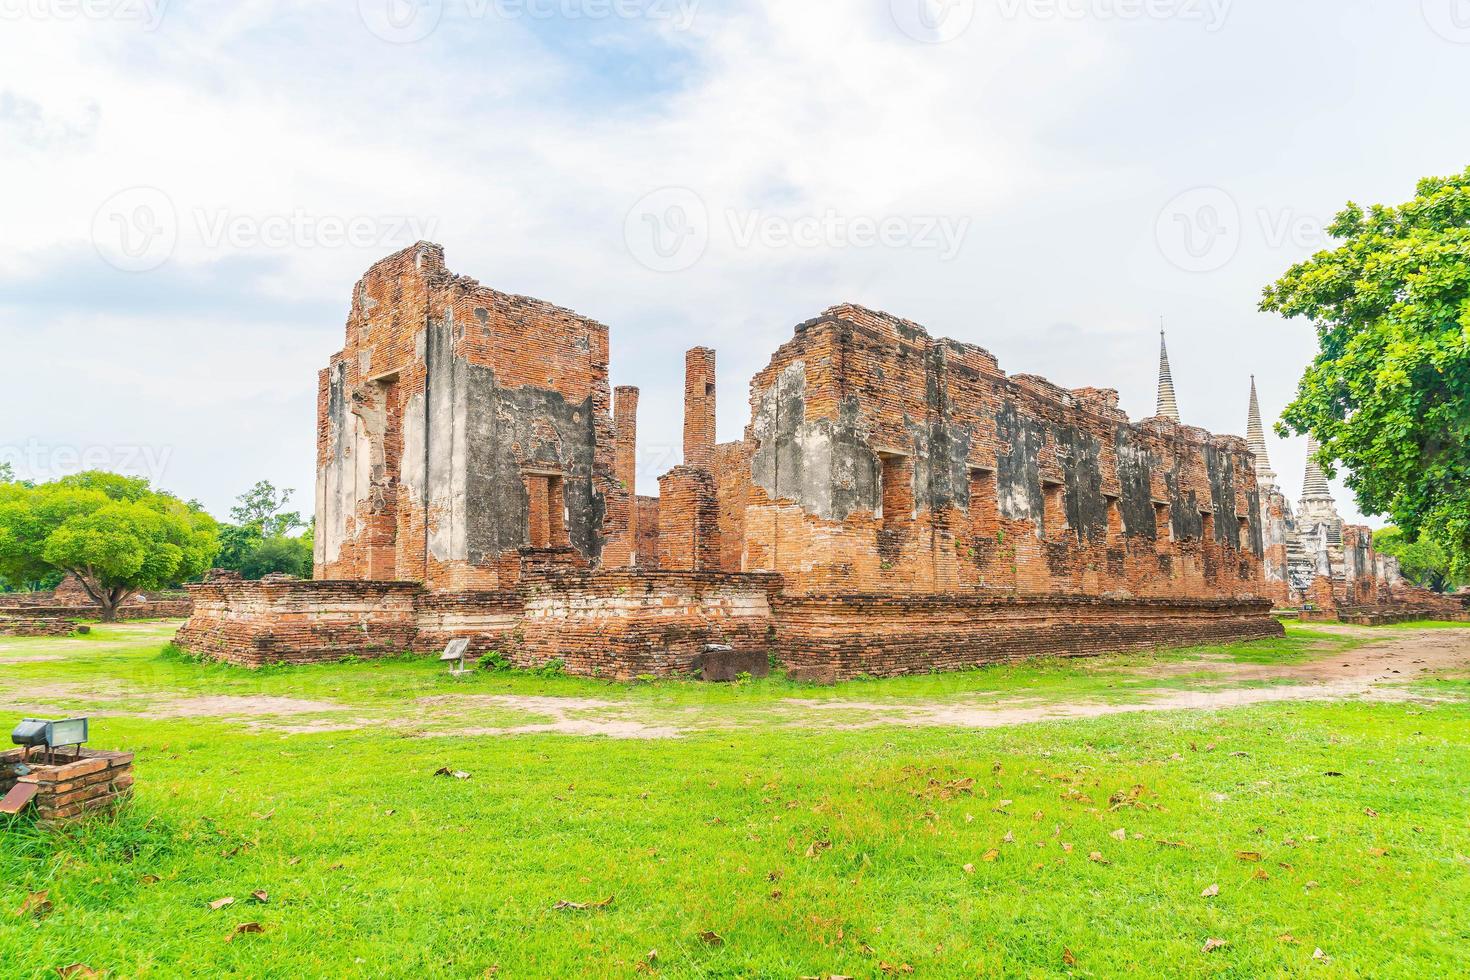 belle architecture ancienne historique d'ayutthaya en thaïlande - boostez le style de traitement des couleurs photo